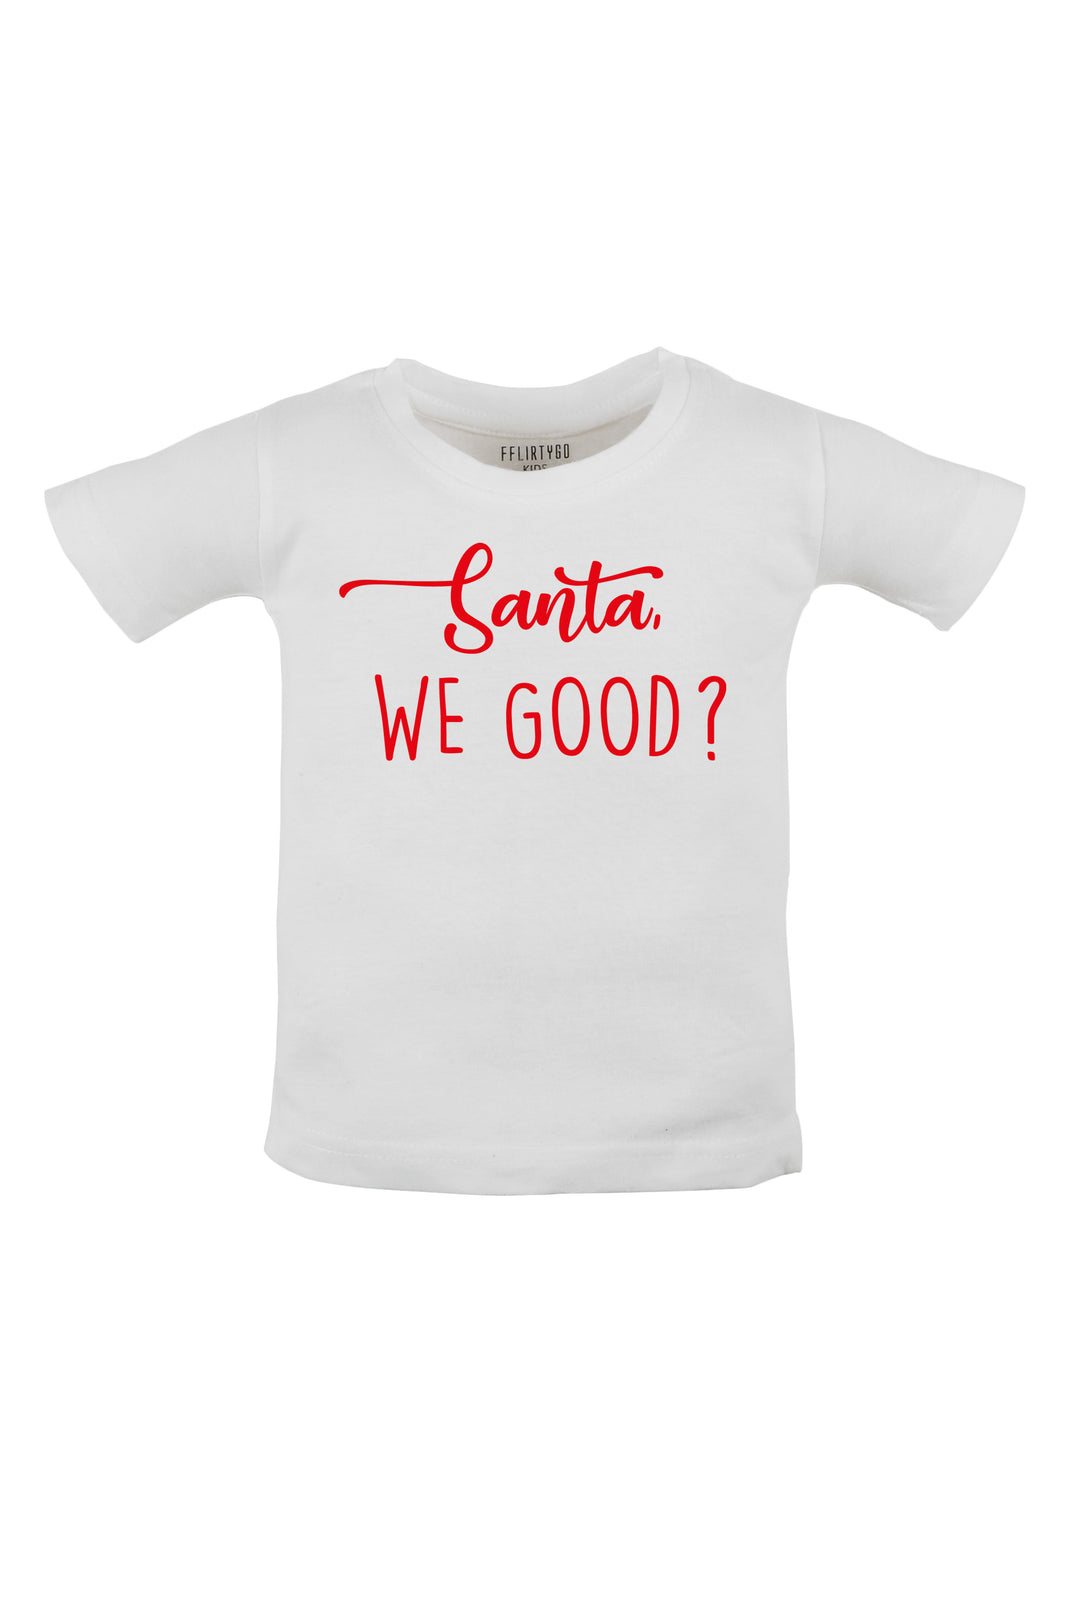 Santa, We Good ? Kids T Shirt